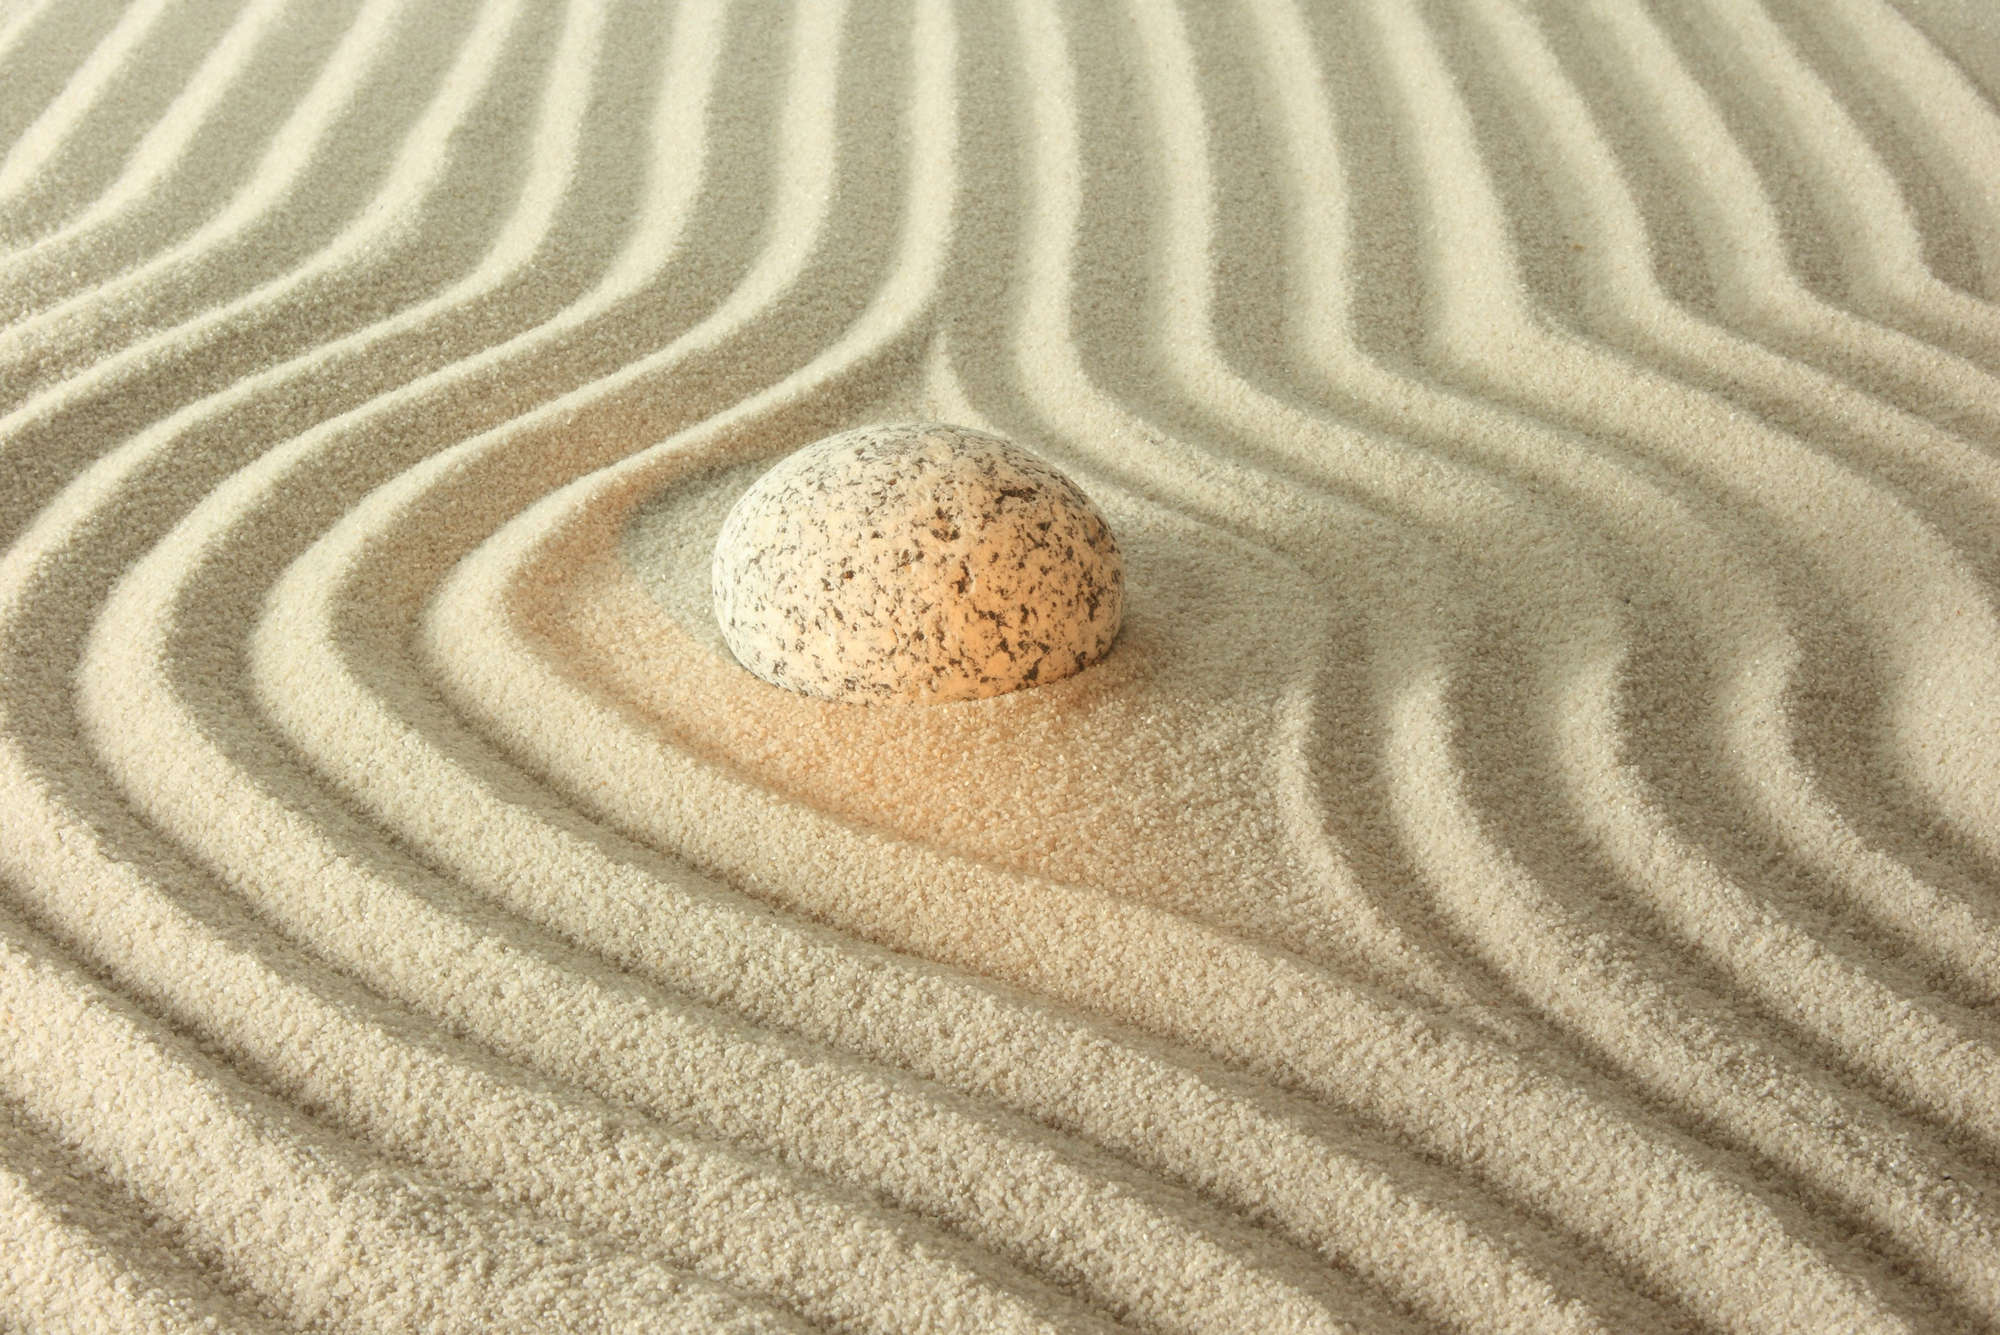             Fototapete leuchtender Stein im Sand – Perlmutt Glattvlies
        